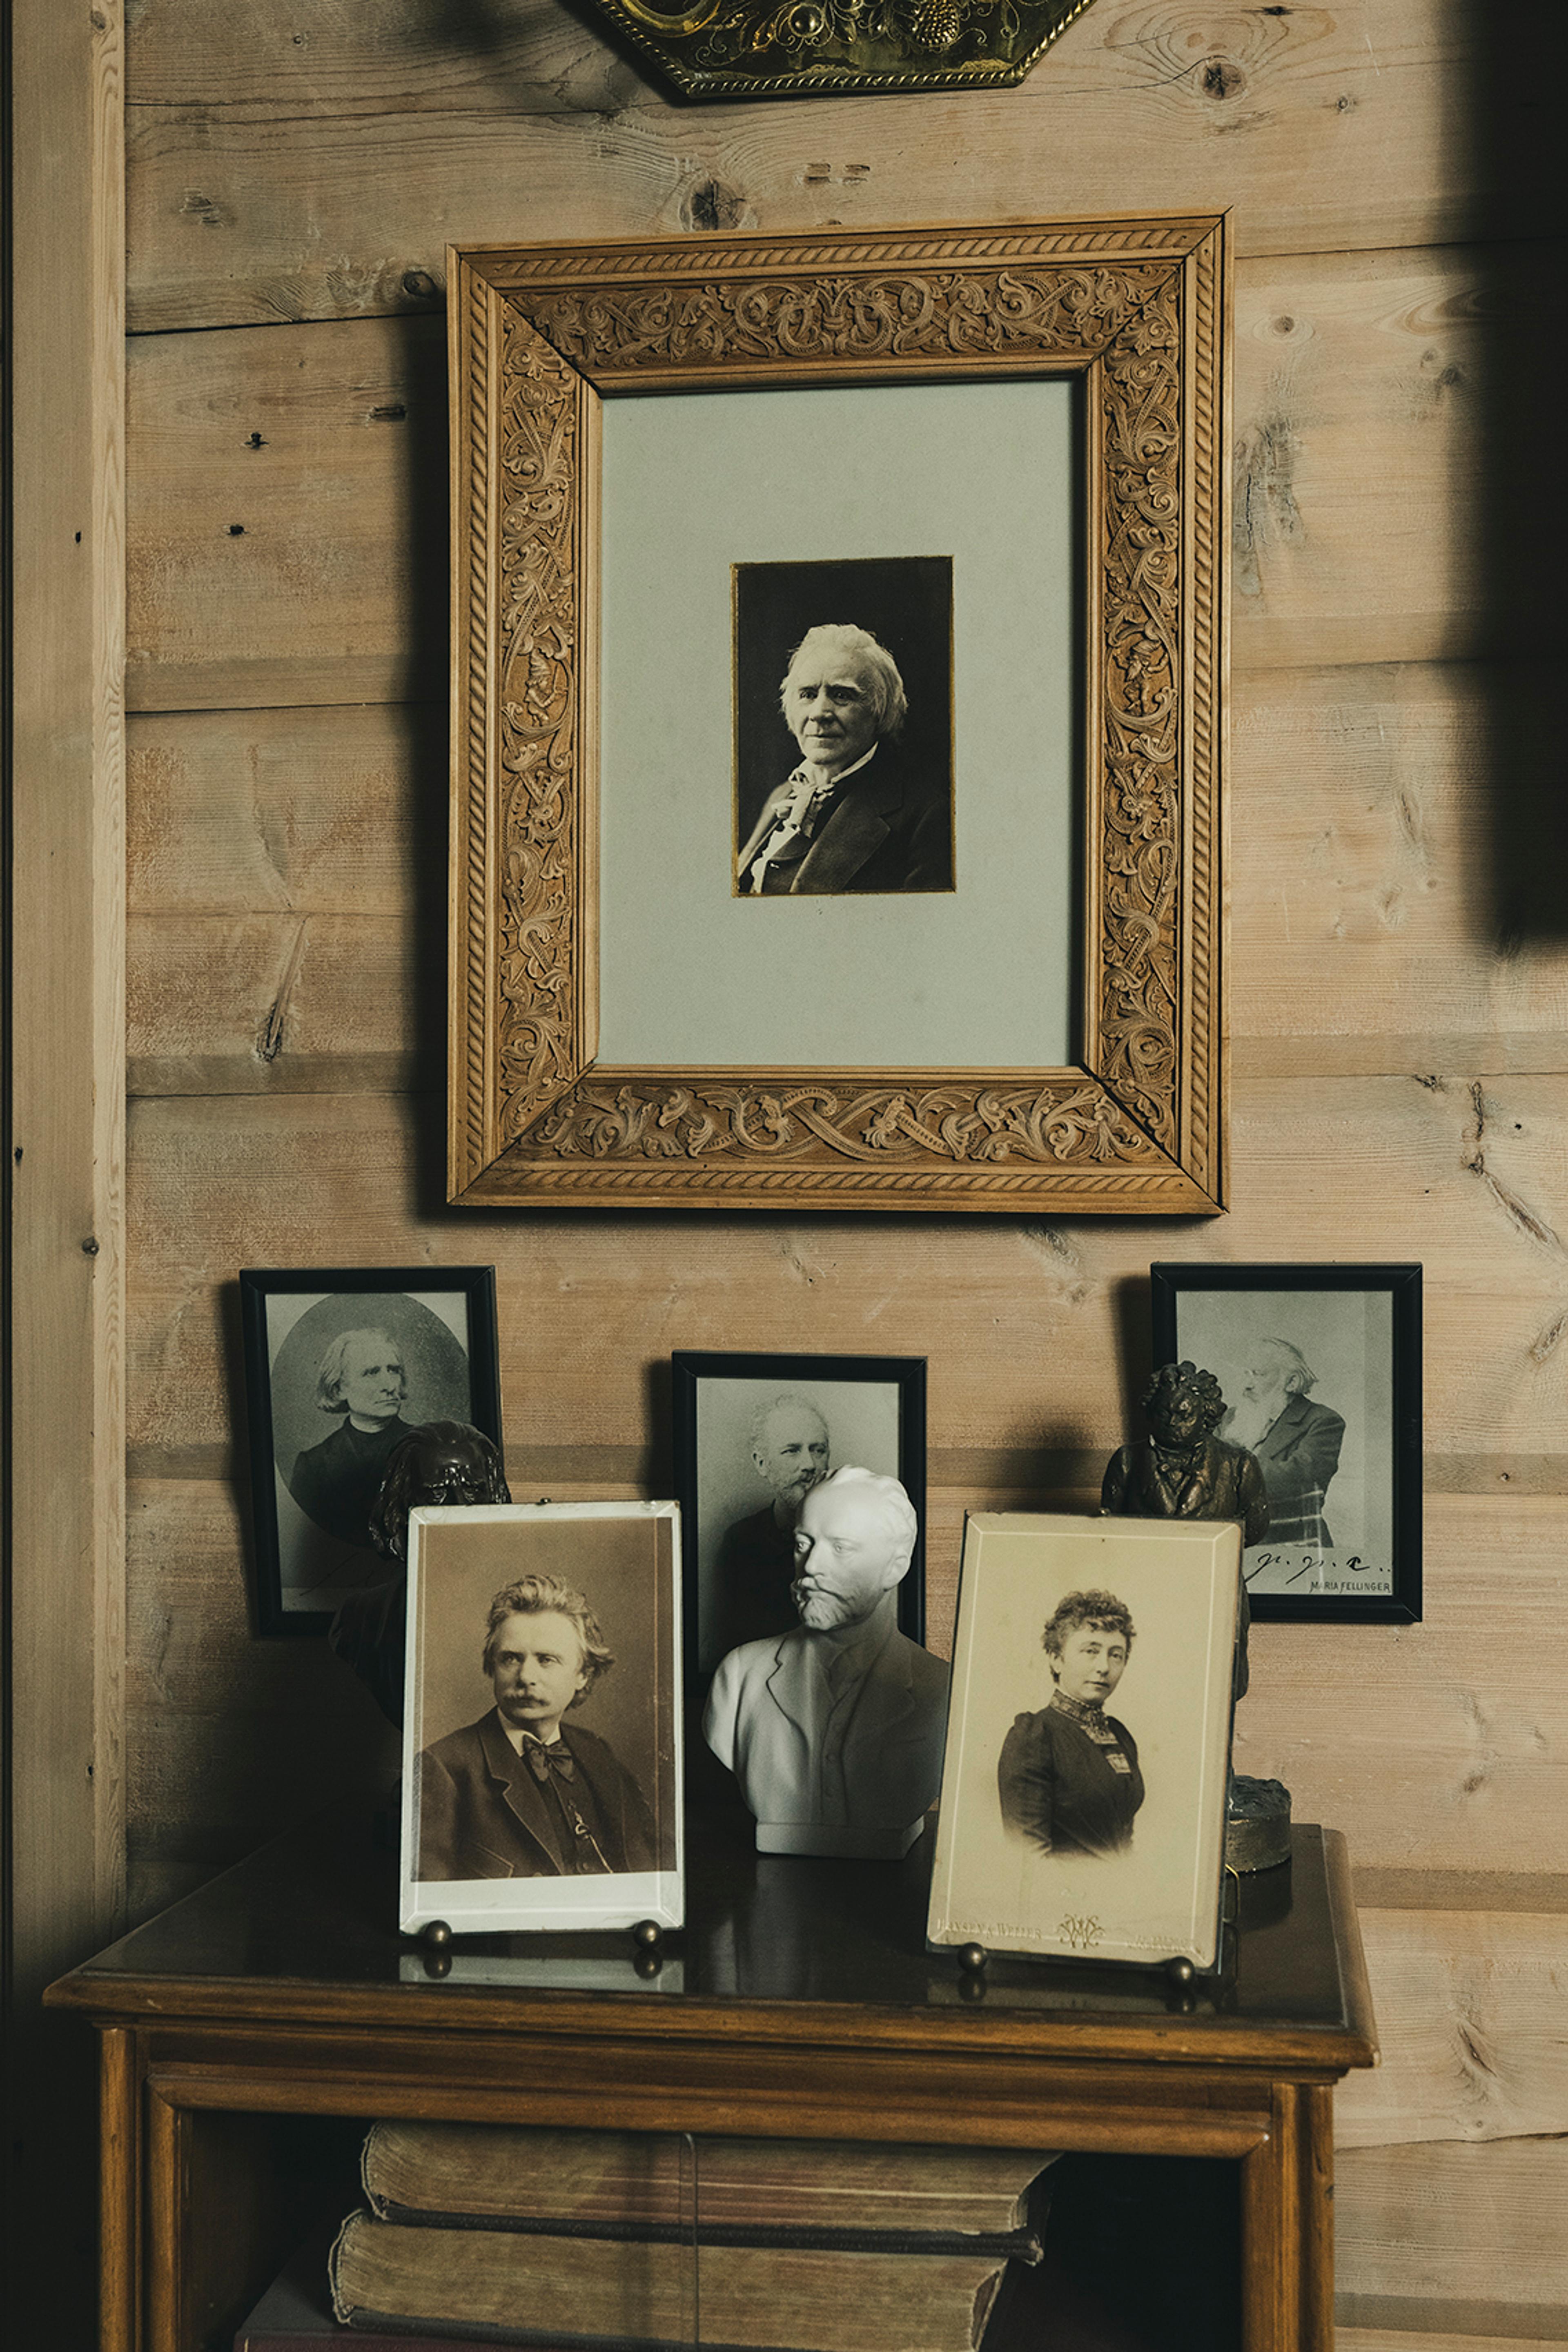 Flere fotografier og bilder i Griegs villa, plassert oppå et bord. Et av bildene viser Ole Bull.